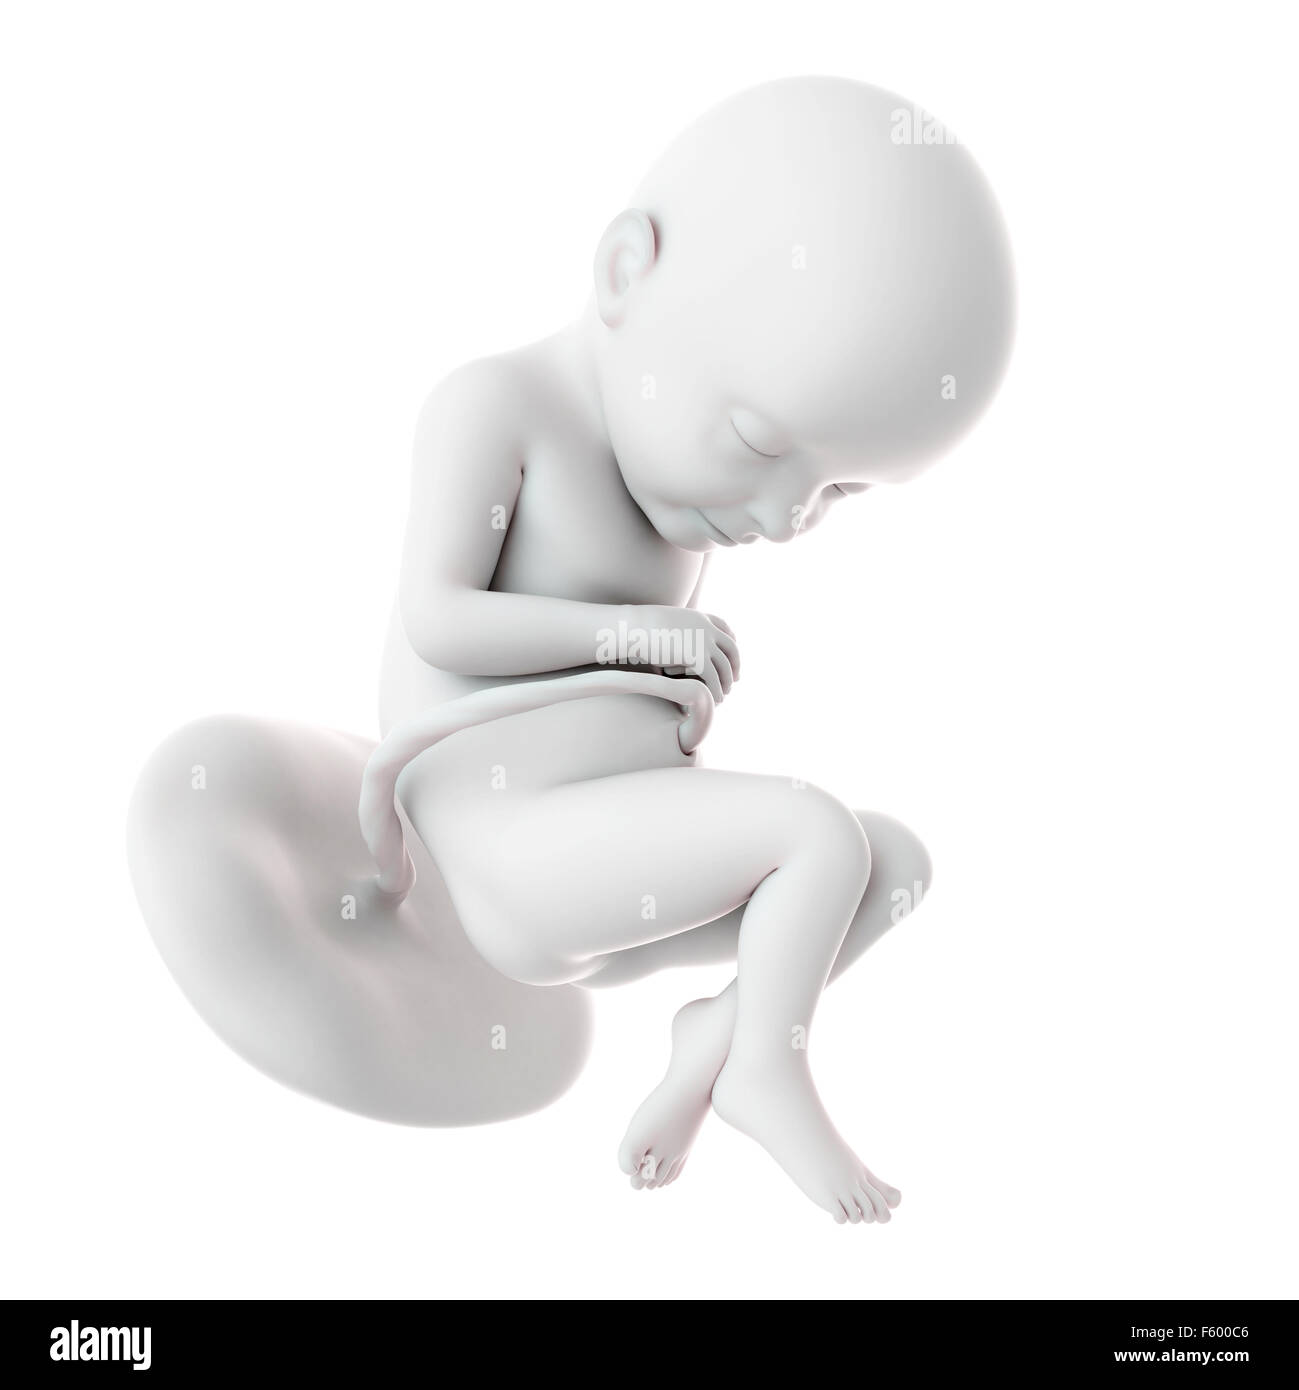 Semana 32 embarazo fotografías e imágenes de alta resolución - Alamy